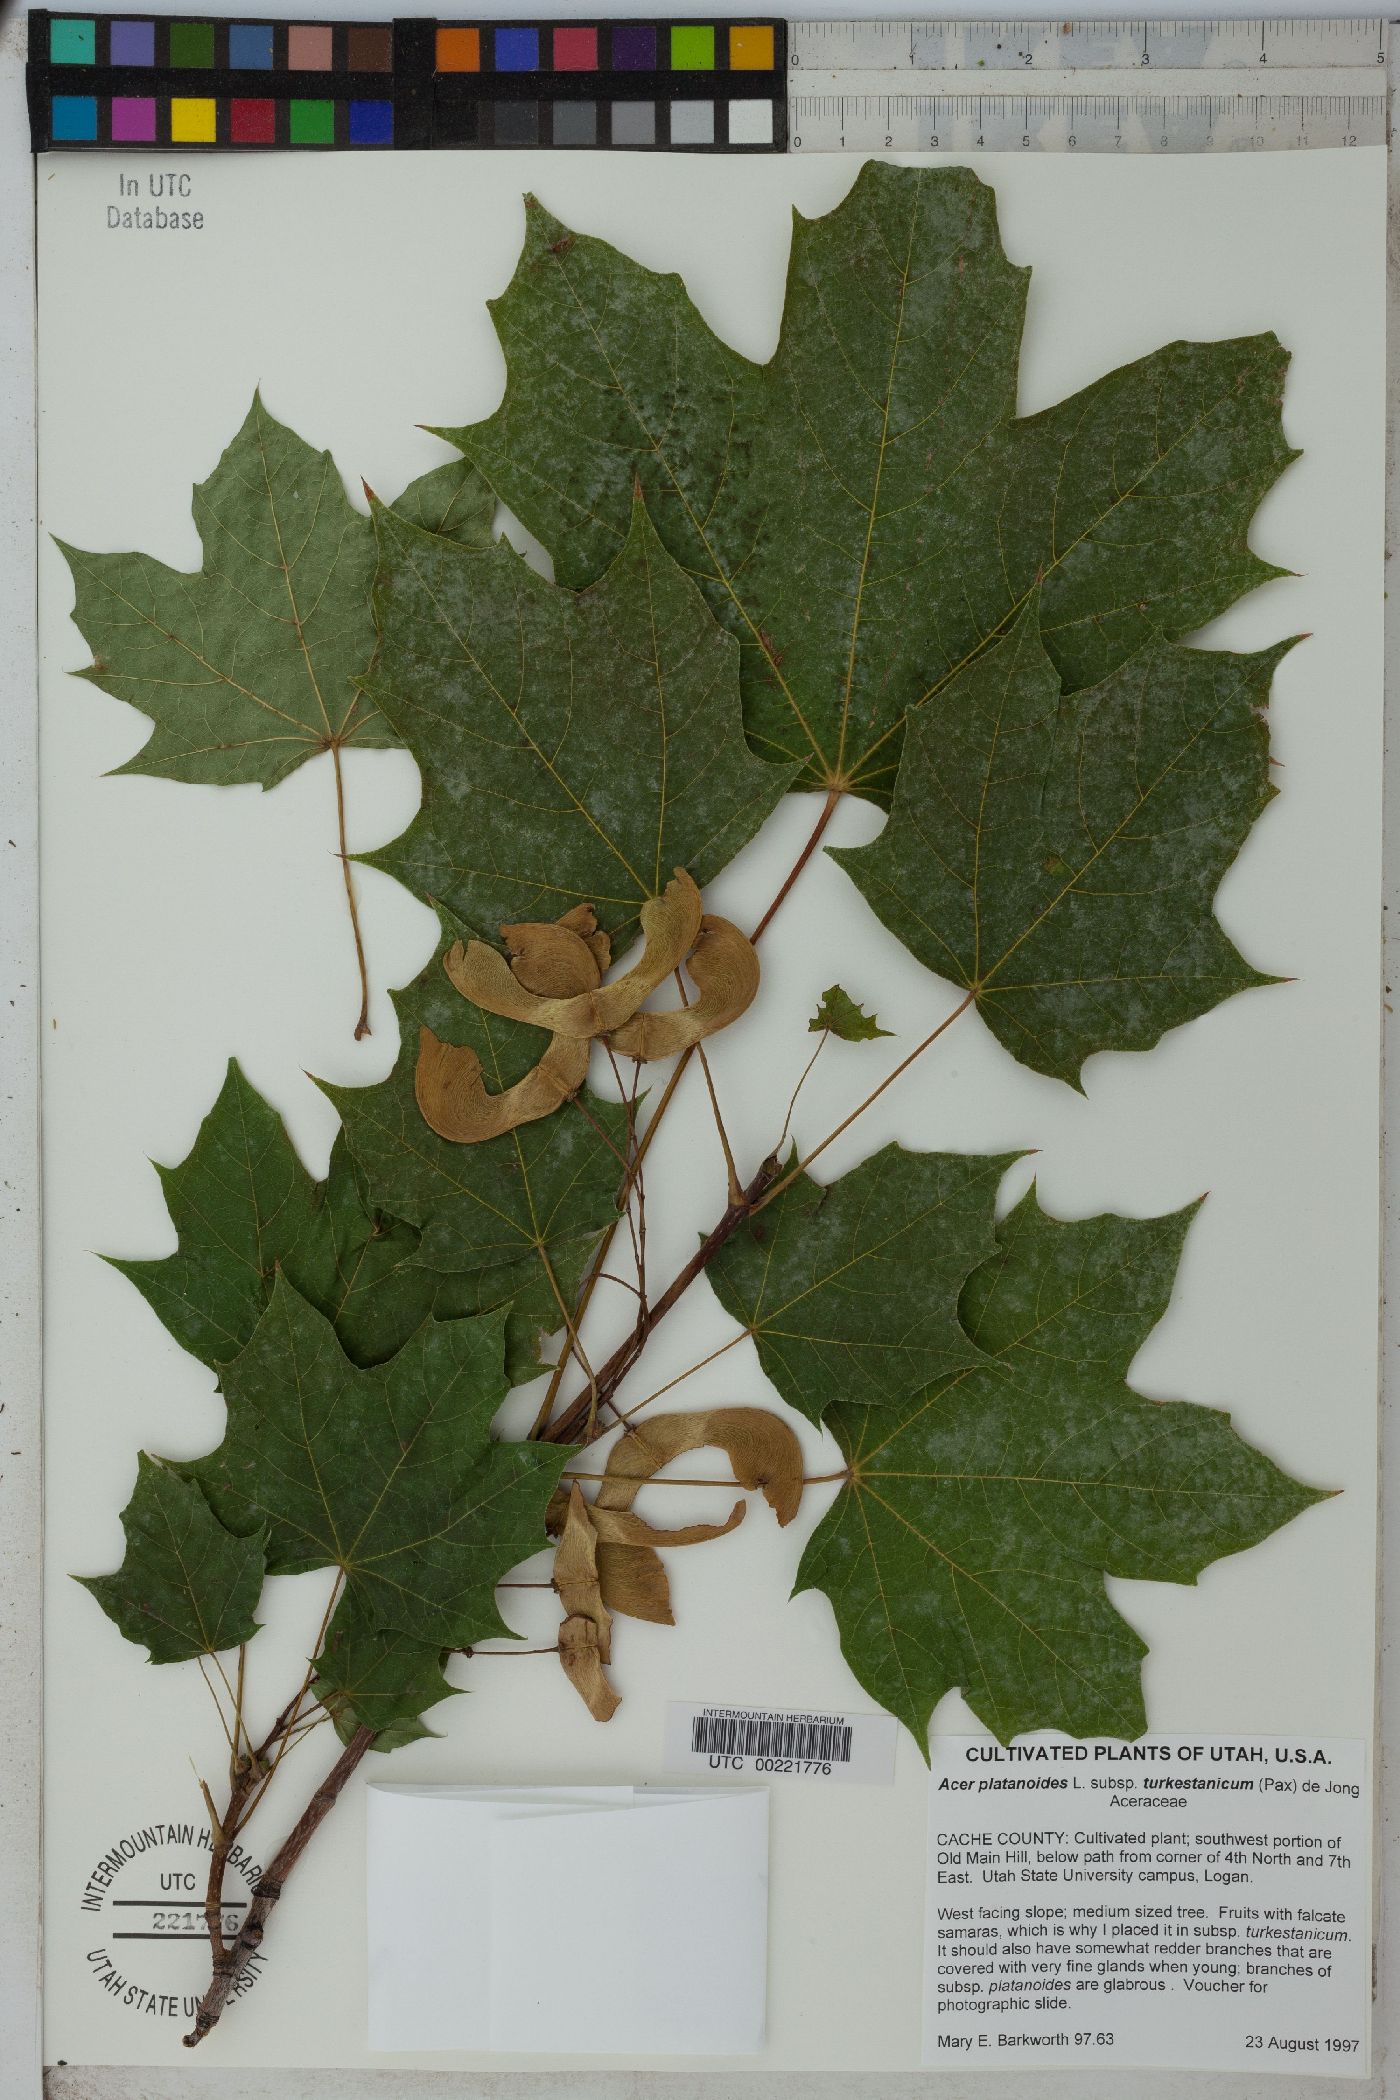 Acer platanoides subsp. turkestanicum image